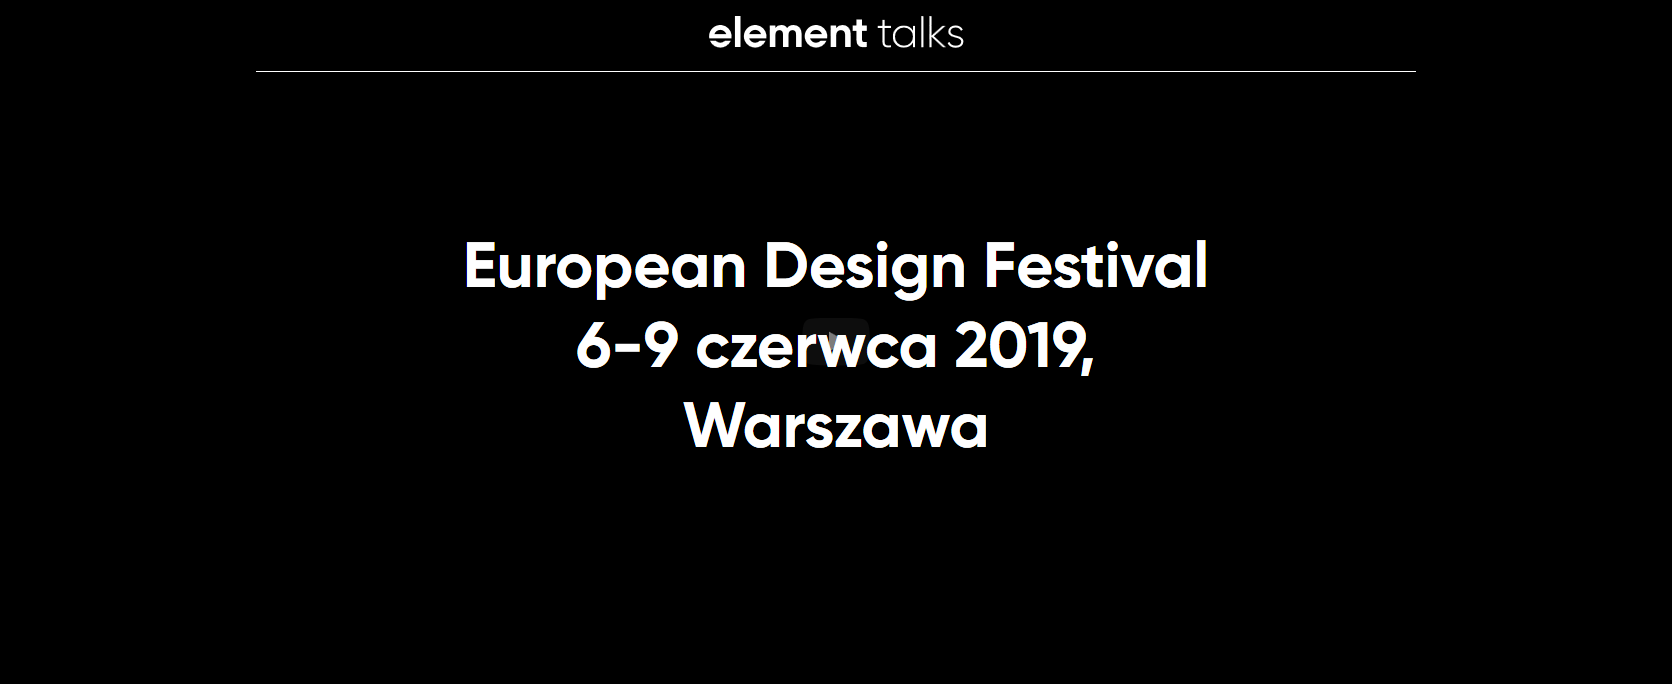 8-9.06.2019 Konferencja Element Talks 2019 Portfolio is Dead Warszawa 